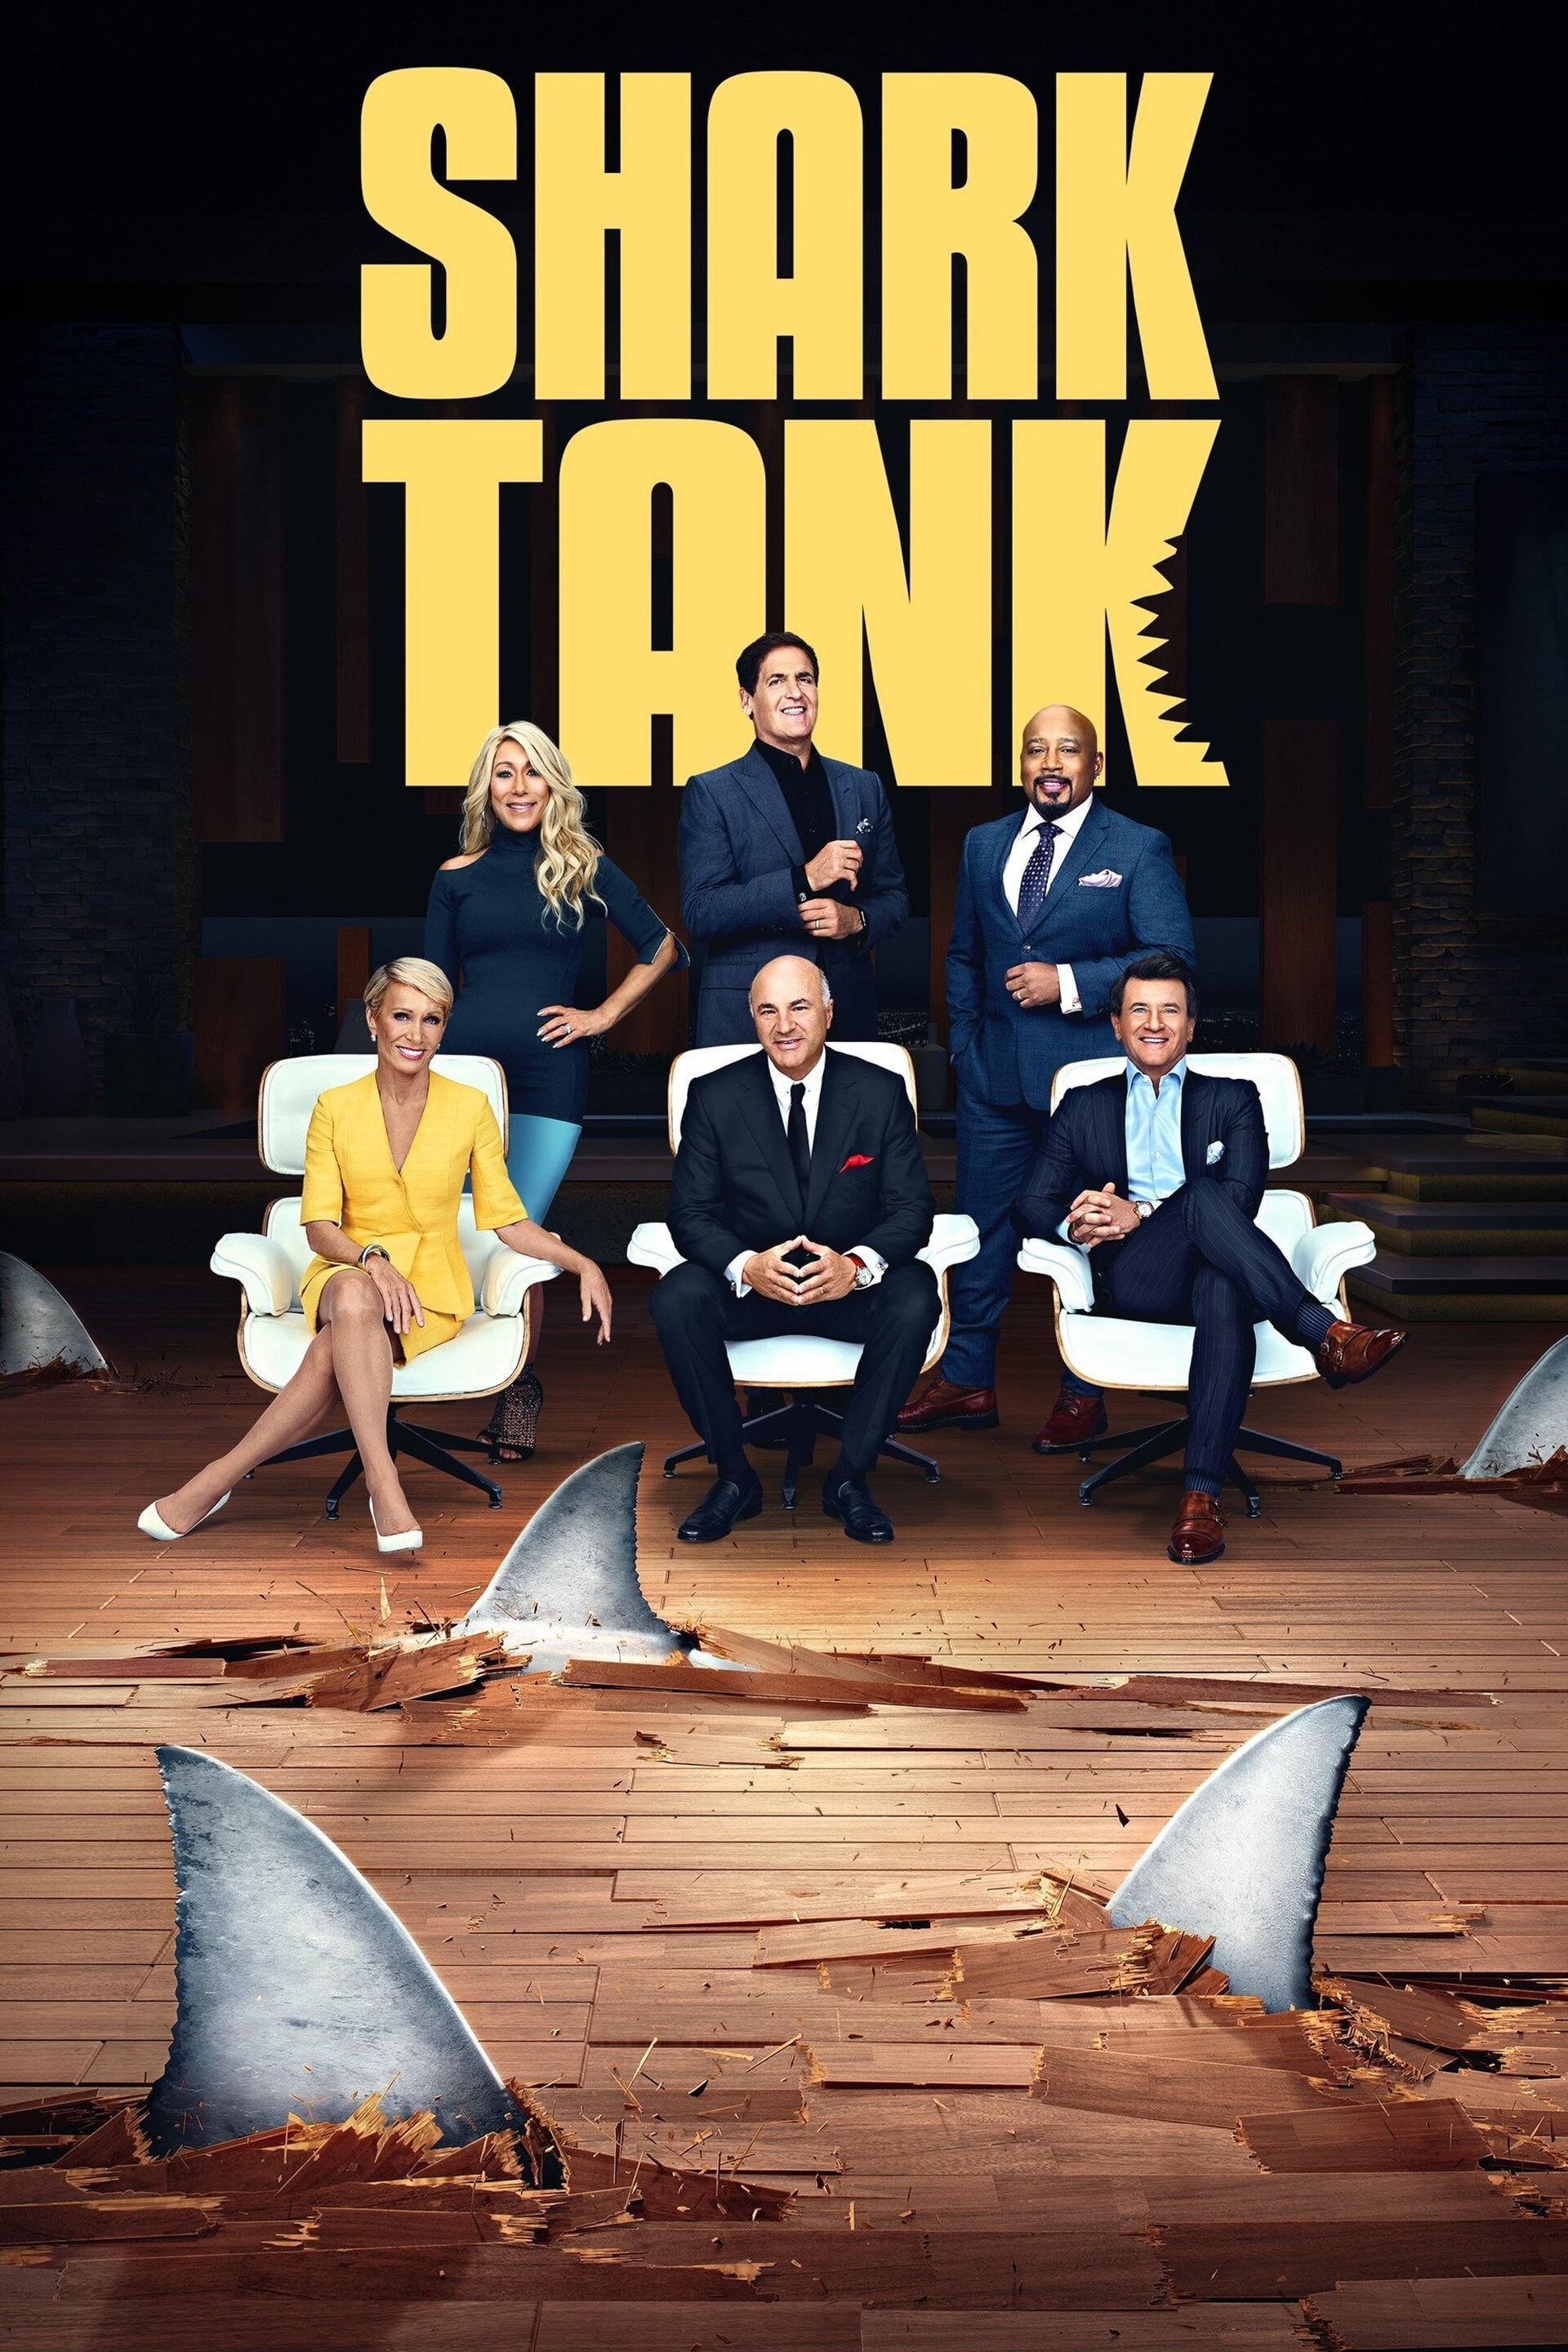 The Cheese Chopper Shark Tank Season 12